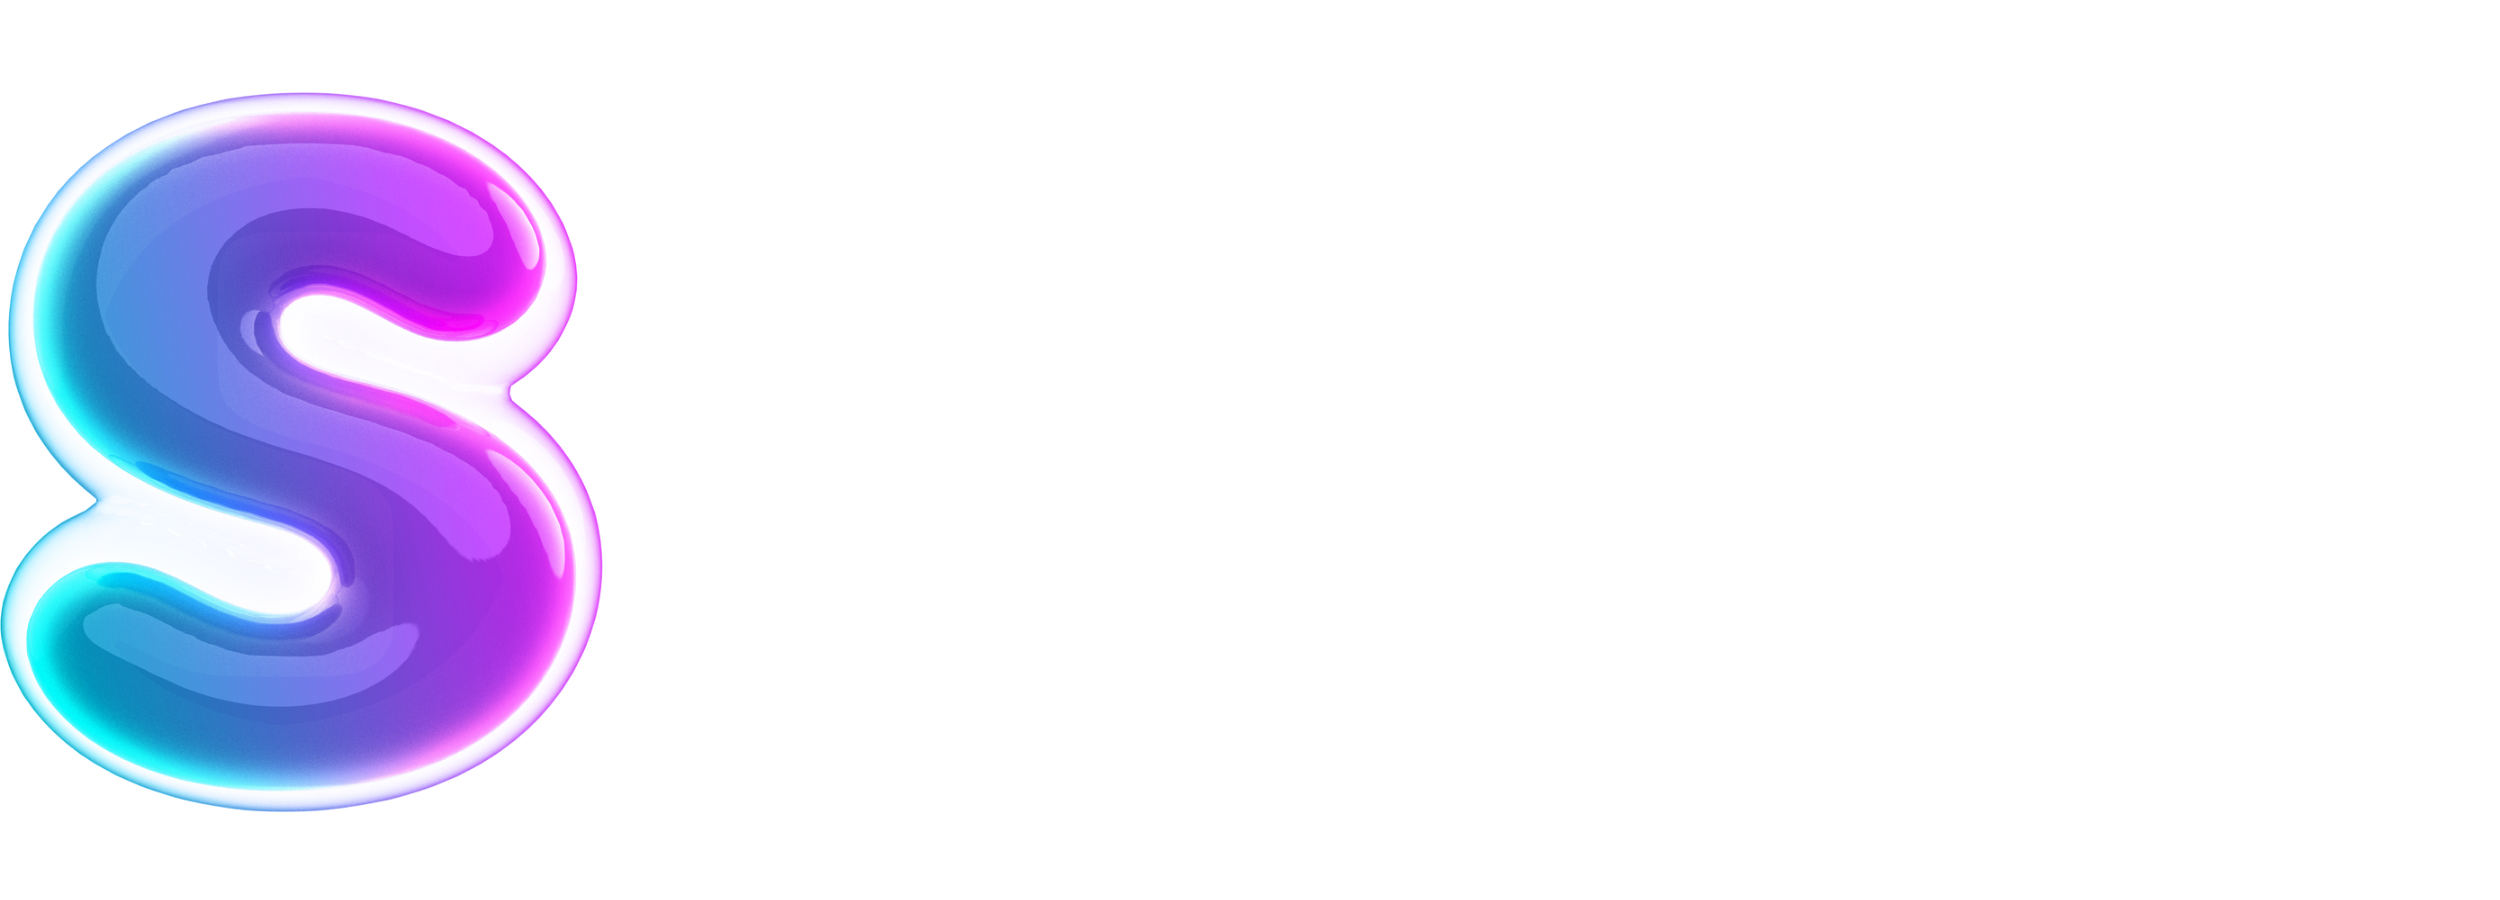 Surgaonline.com